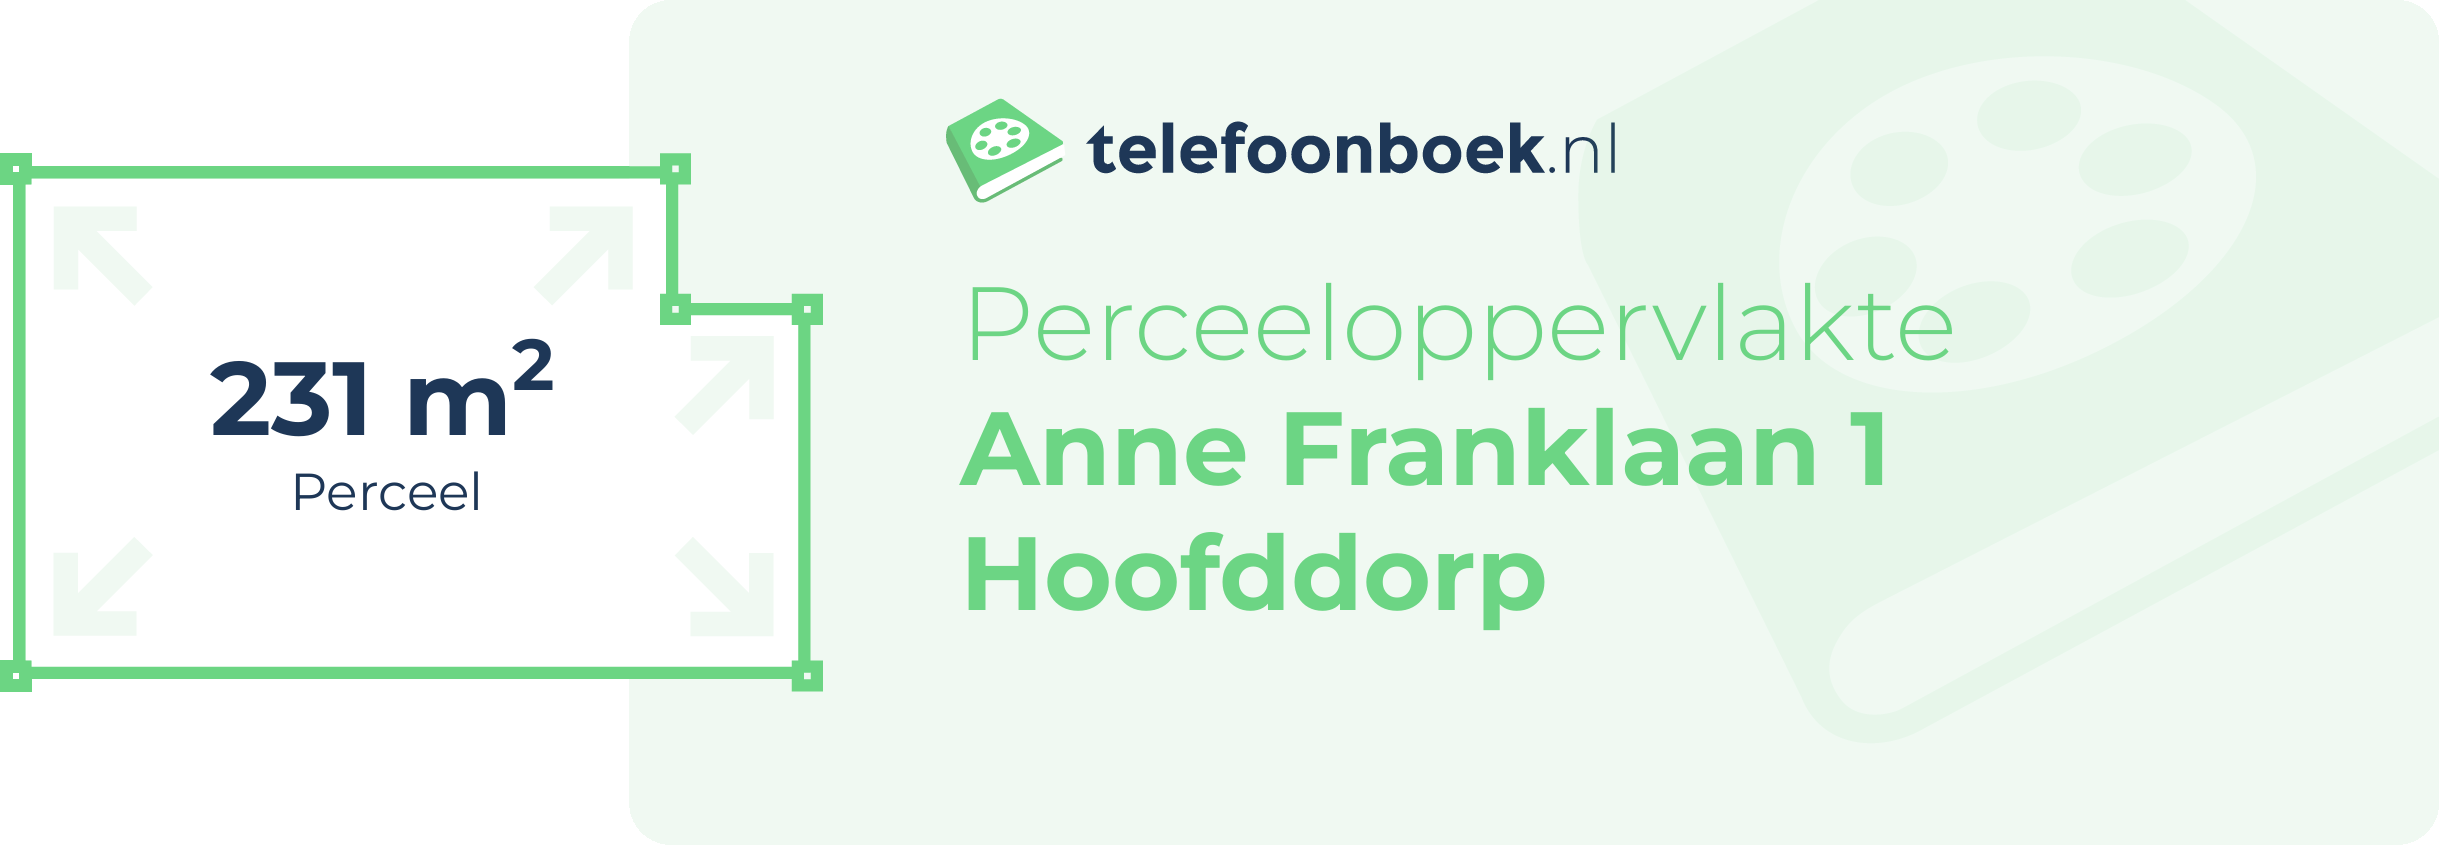 Perceeloppervlakte Anne Franklaan 1 Hoofddorp